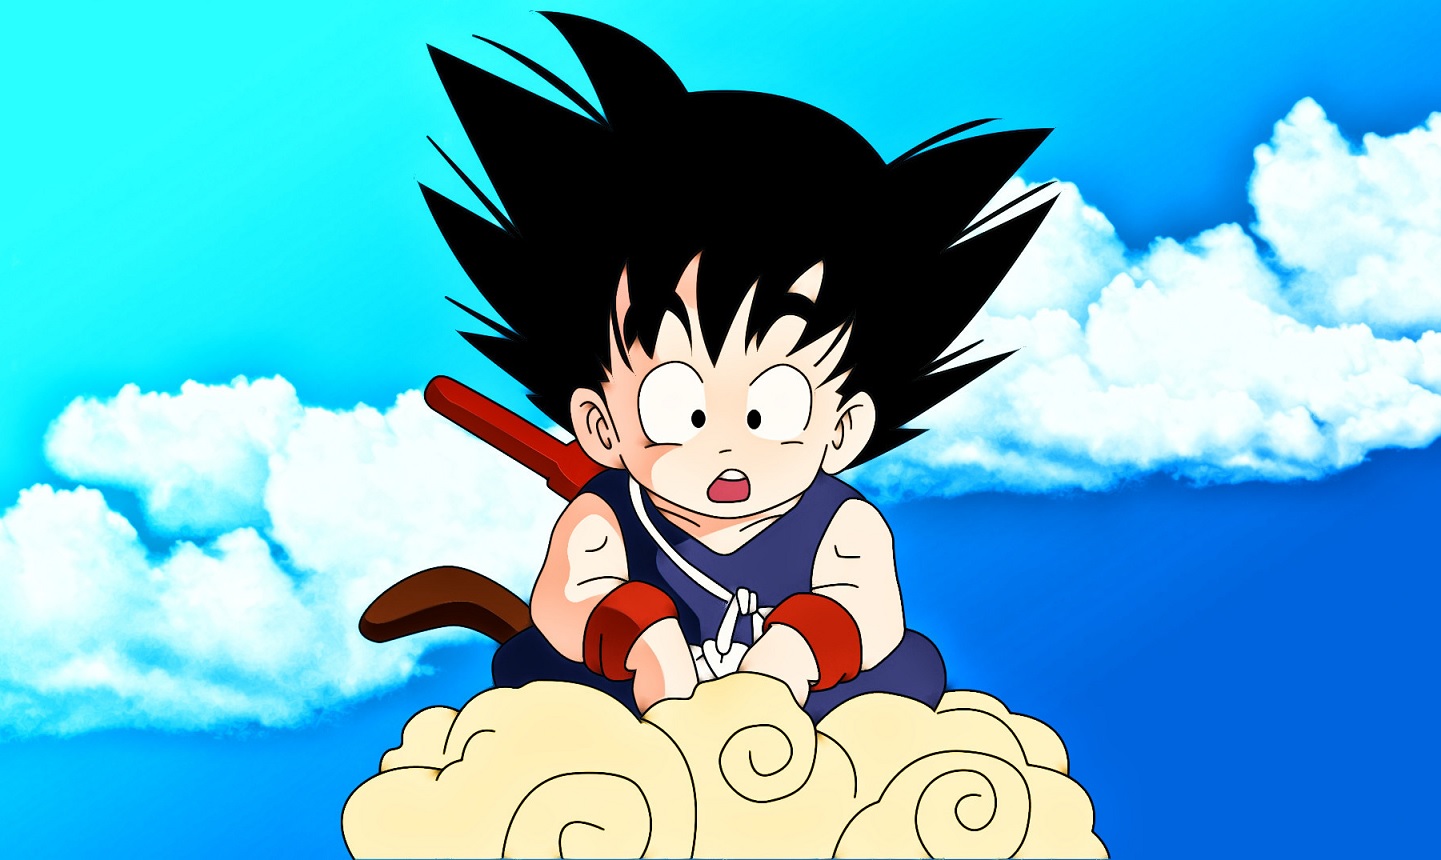 Vídeo de Dragon Ball ressuscitado por fãs mostra Goku adulto interagindo com a sua versão mais jovem